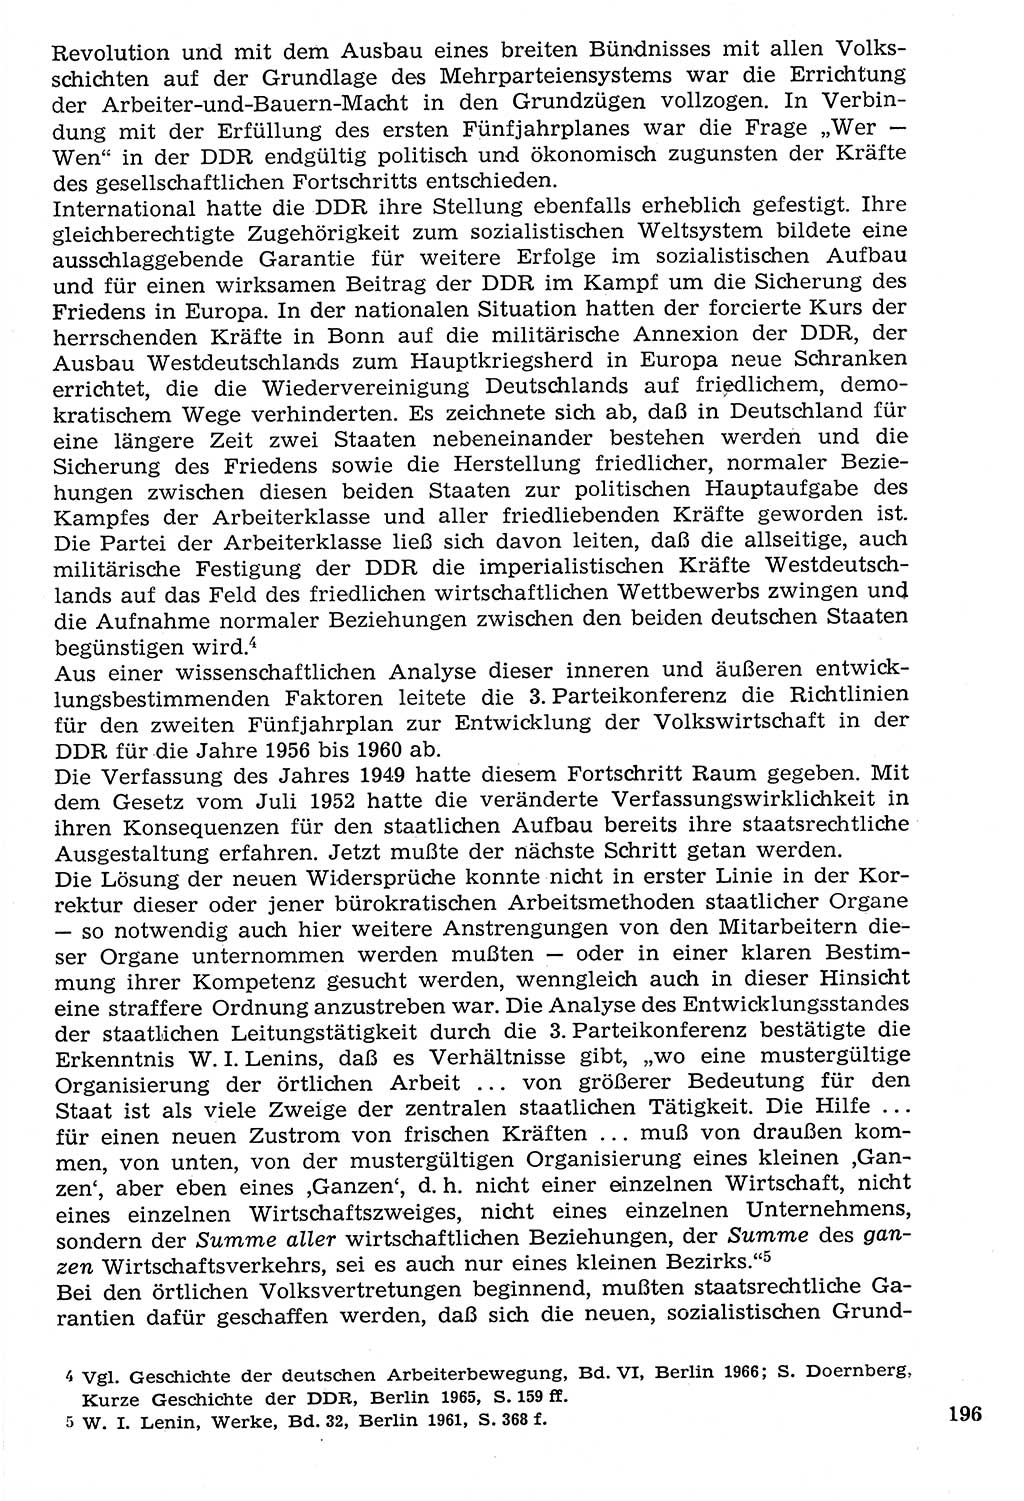 Staat und Recht (StuR), 17. Jahrgang [Deutsche Demokratische Republik (DDR)] 1968, Seite 196 (StuR DDR 1968, S. 196)